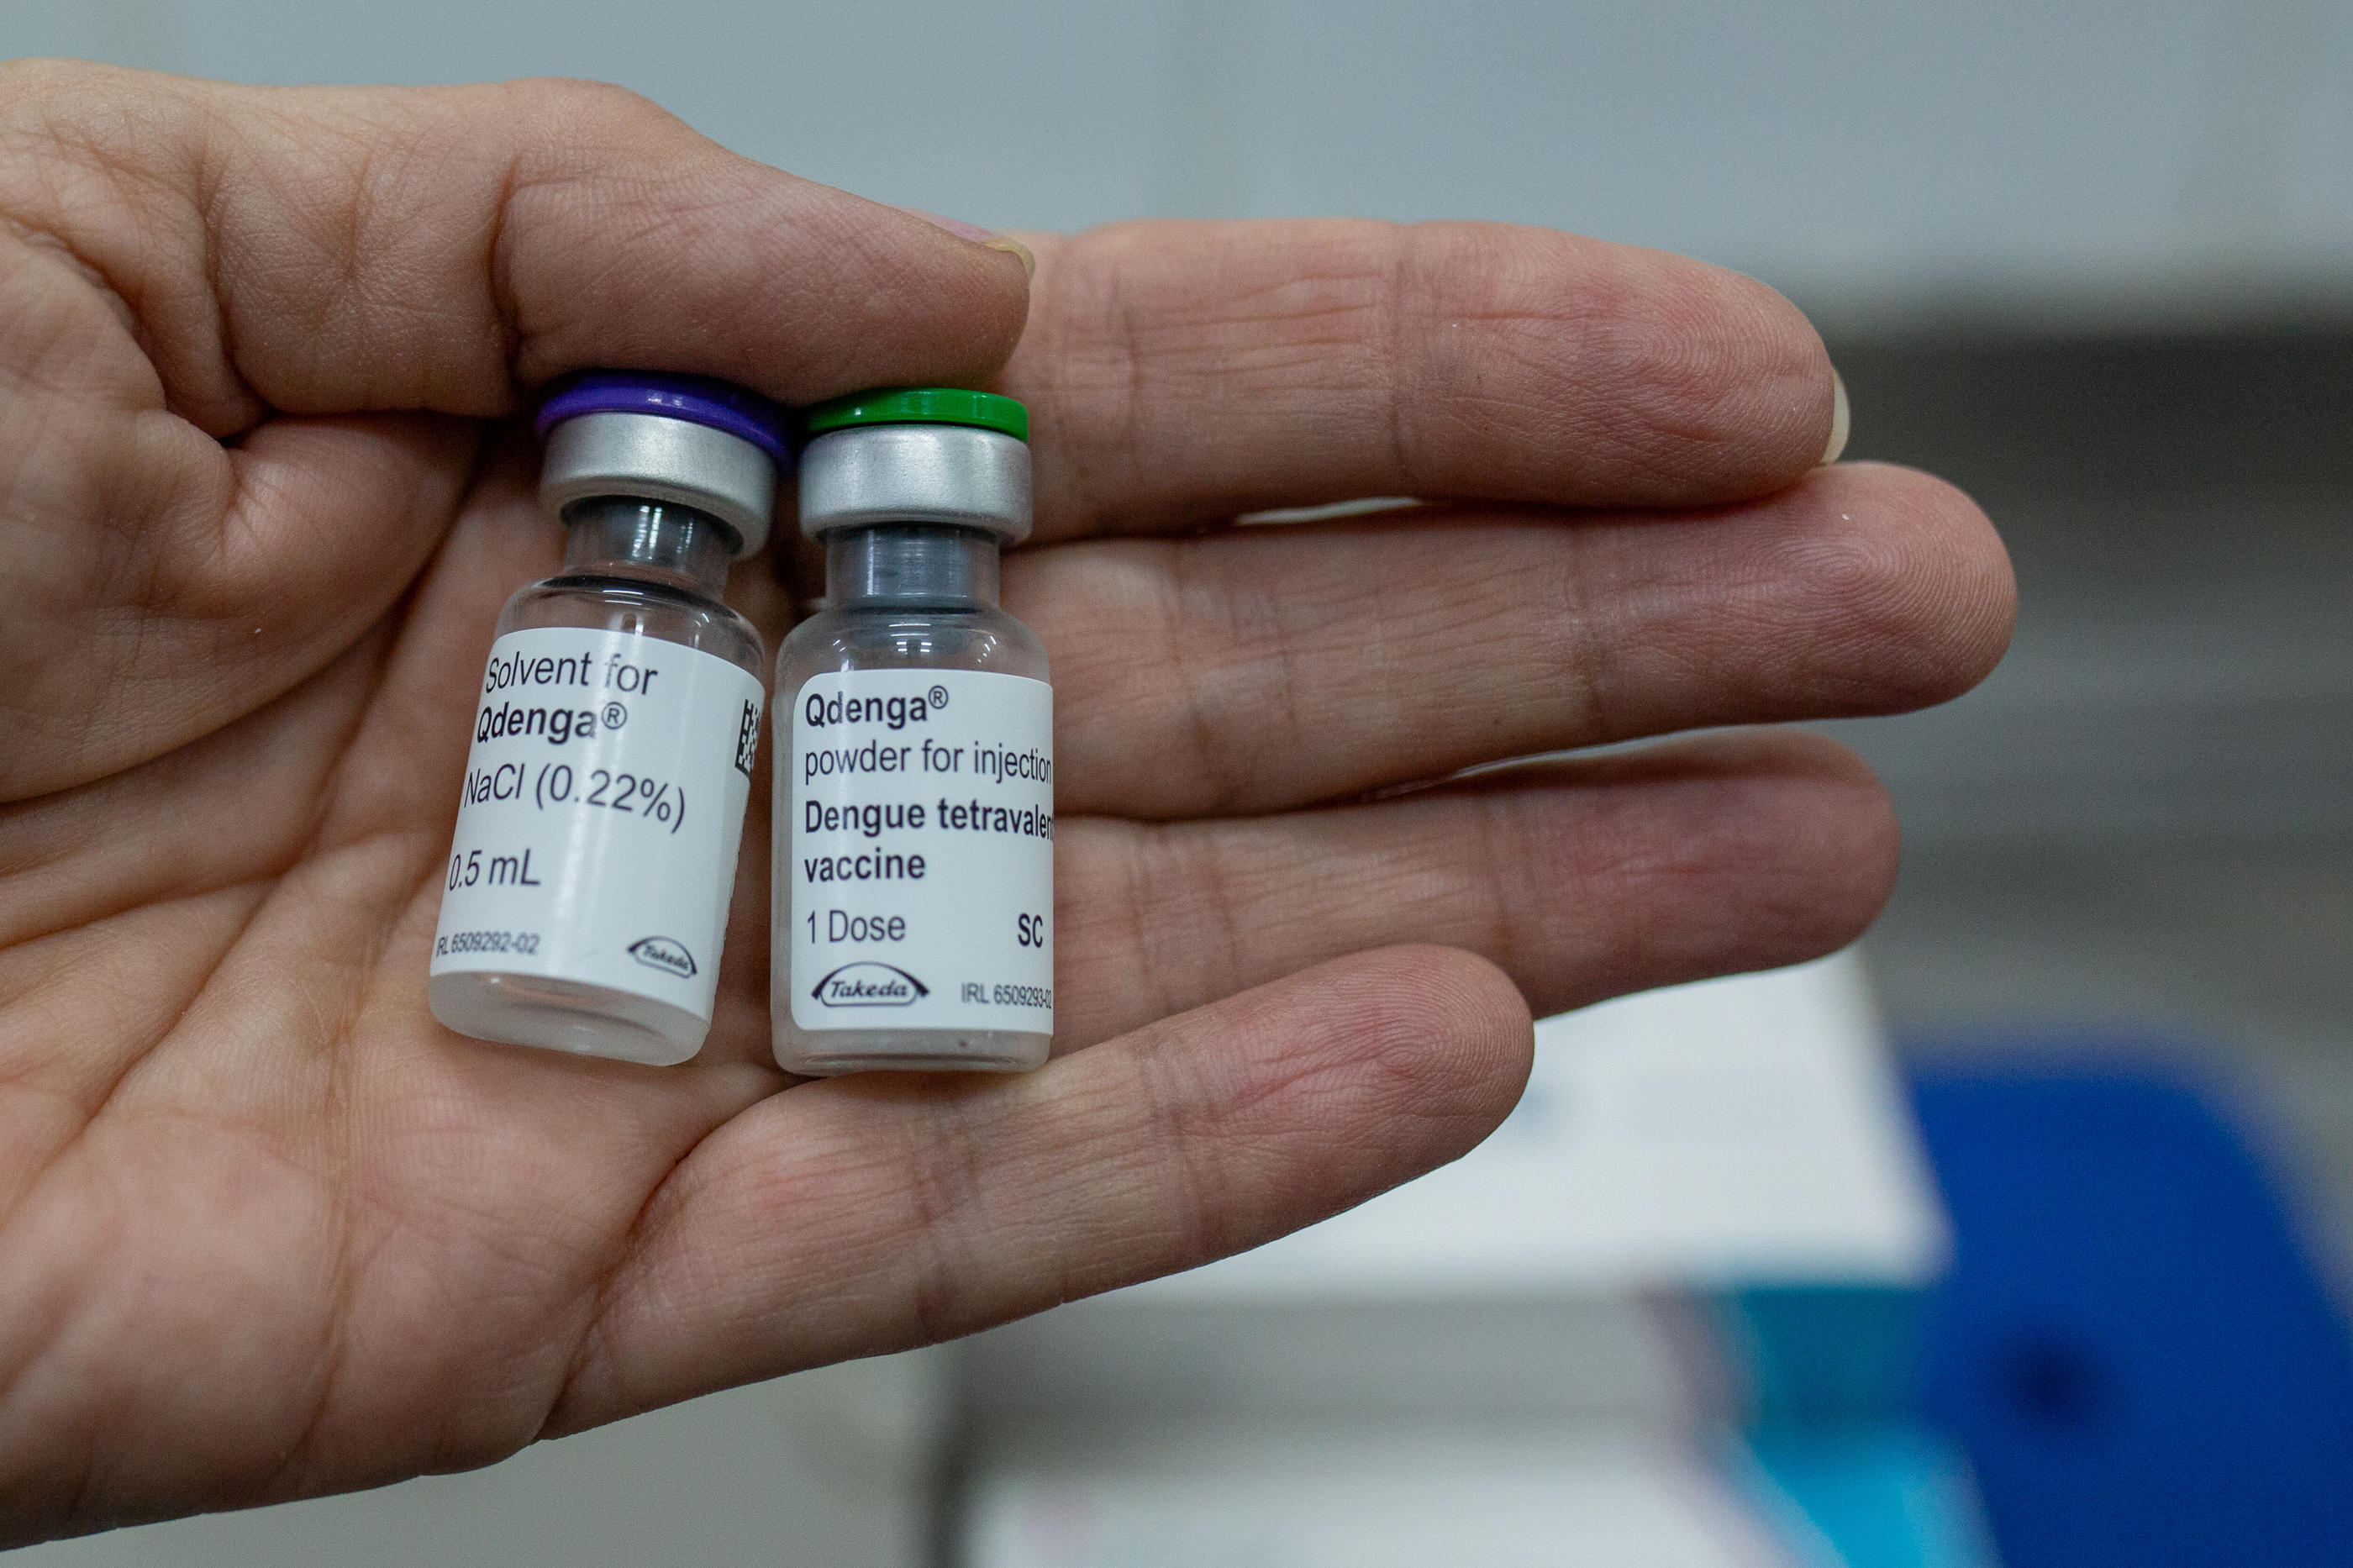 Le vaccin Qdenga pourrait être autorisé pour certaines catégories de personnes dans certains territoires français à l'automne prochain. AGIF/Sipa/Antonio Pereira